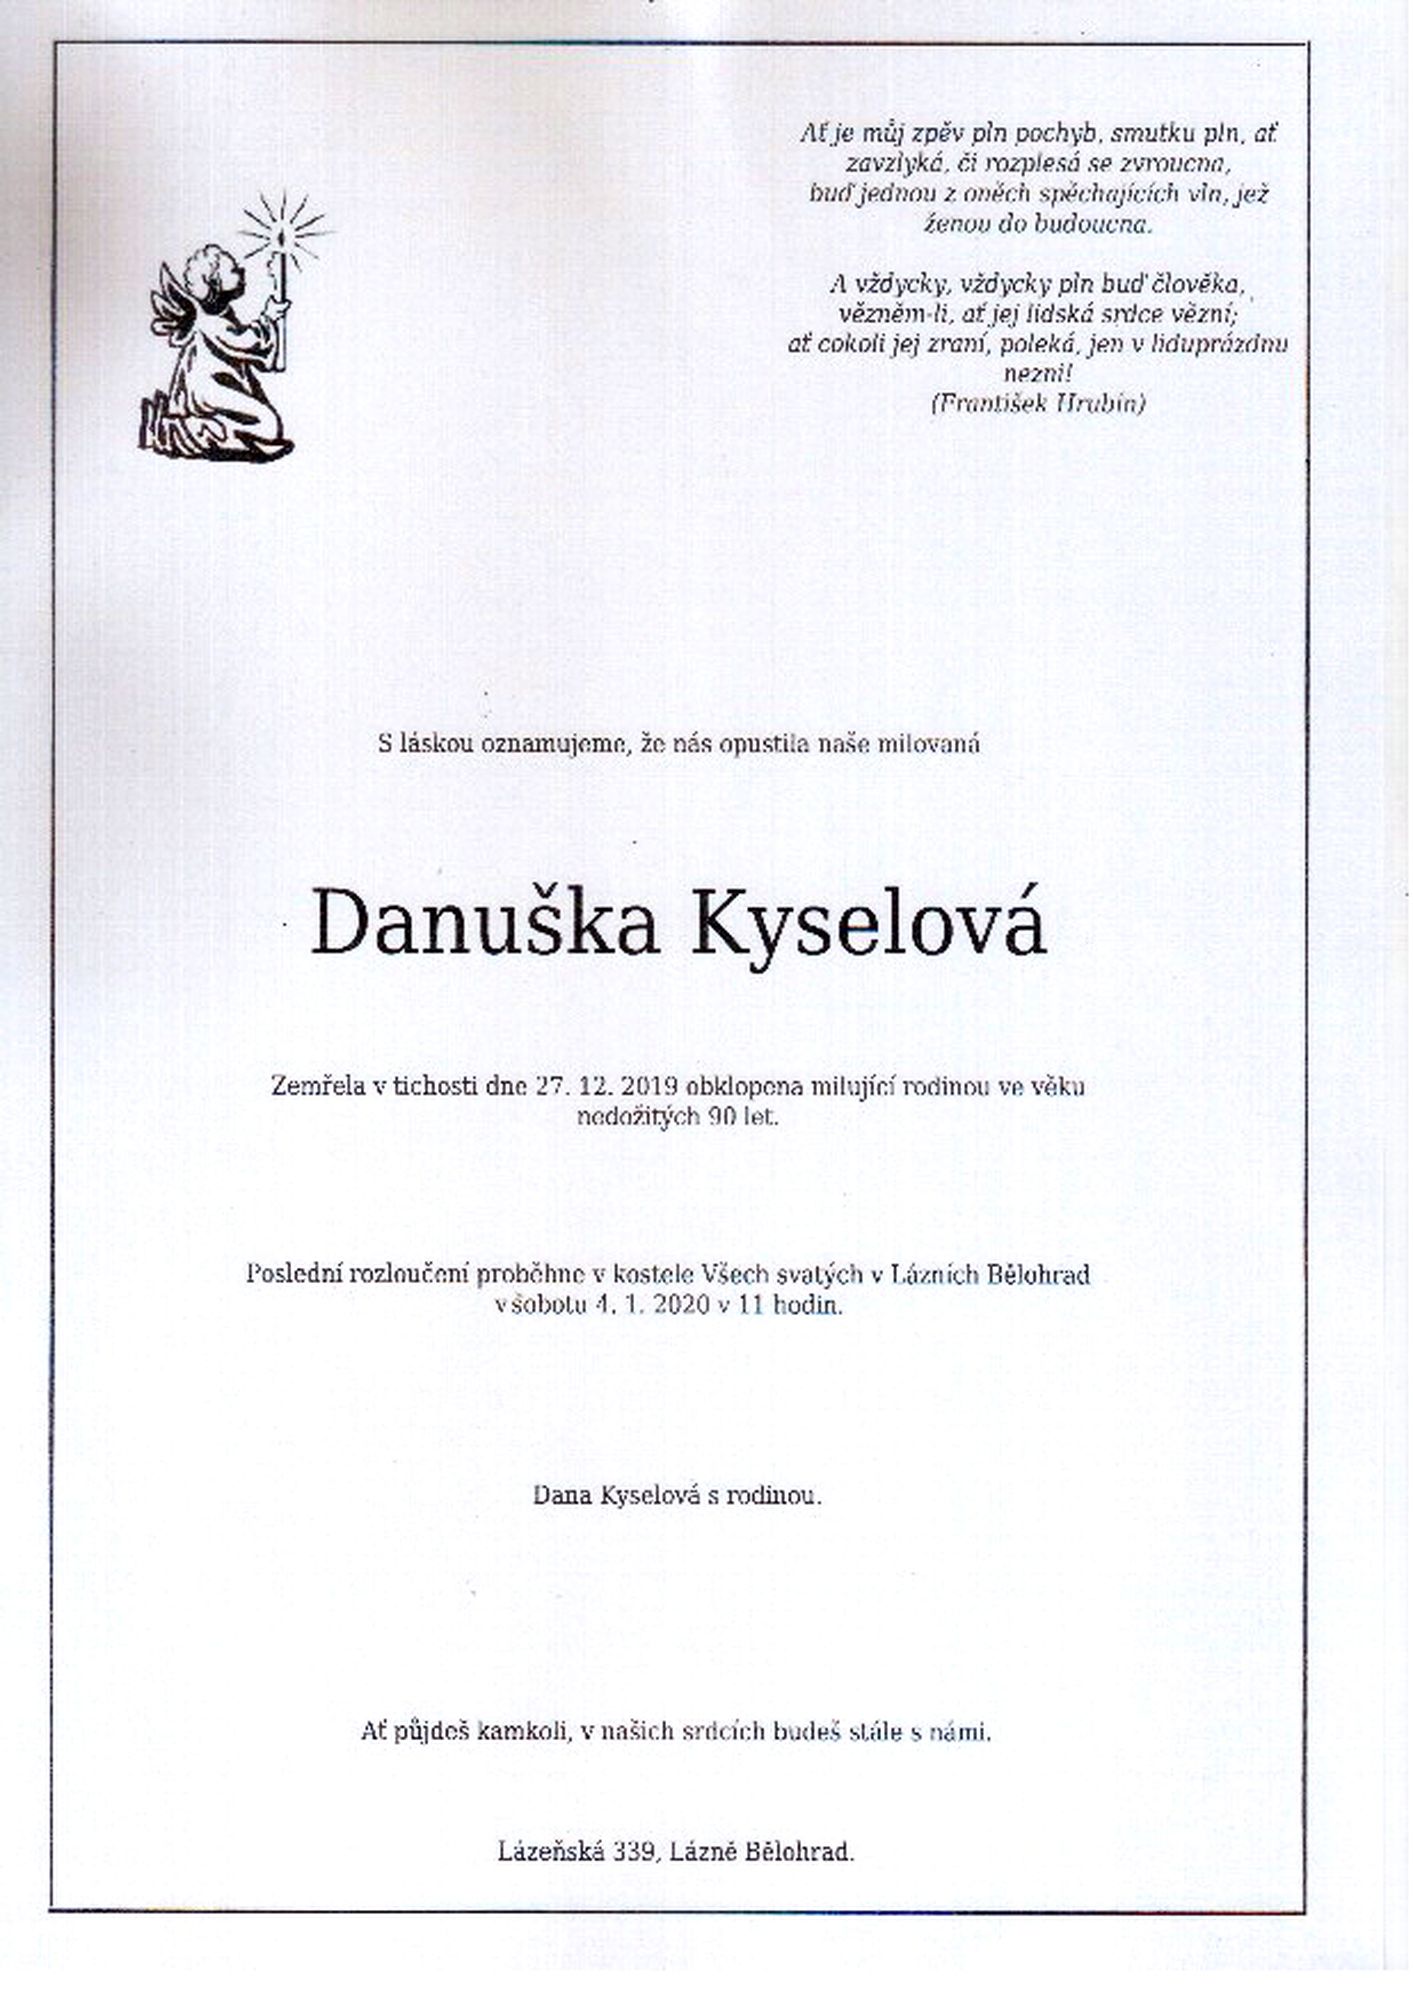 Danuška Kyselová